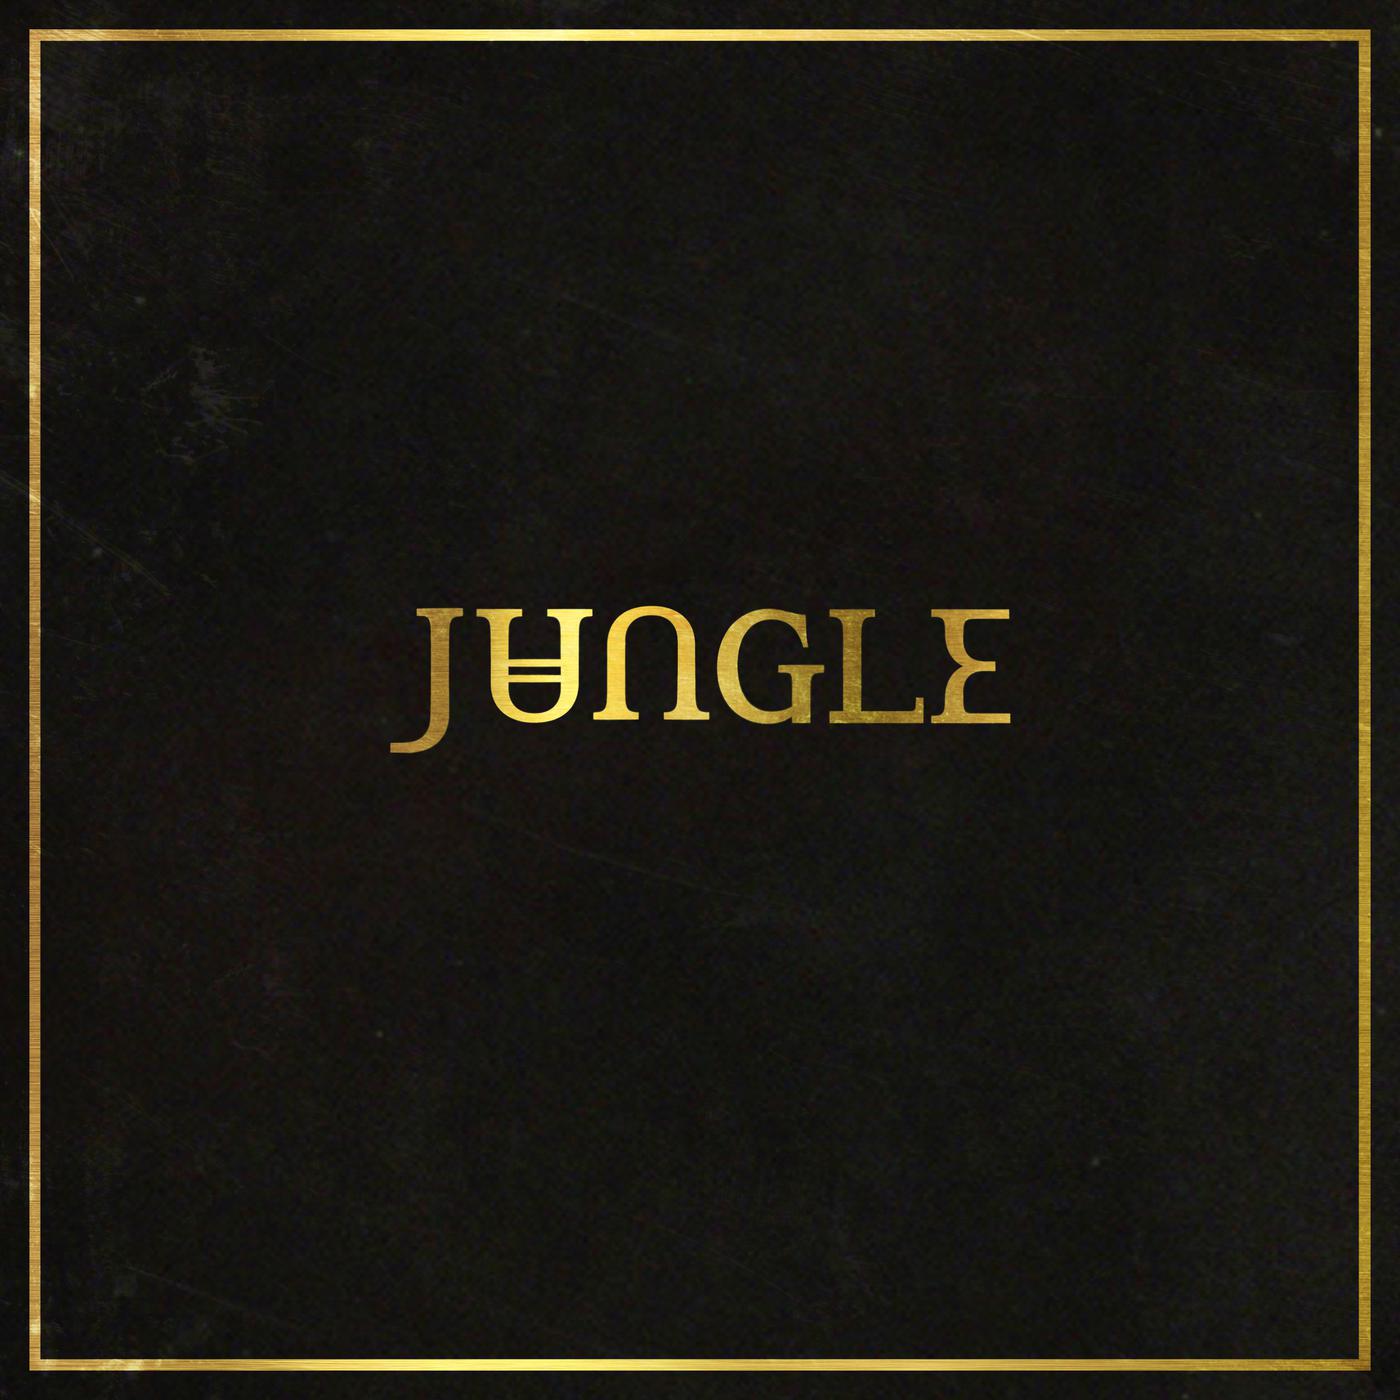 Jungle专辑